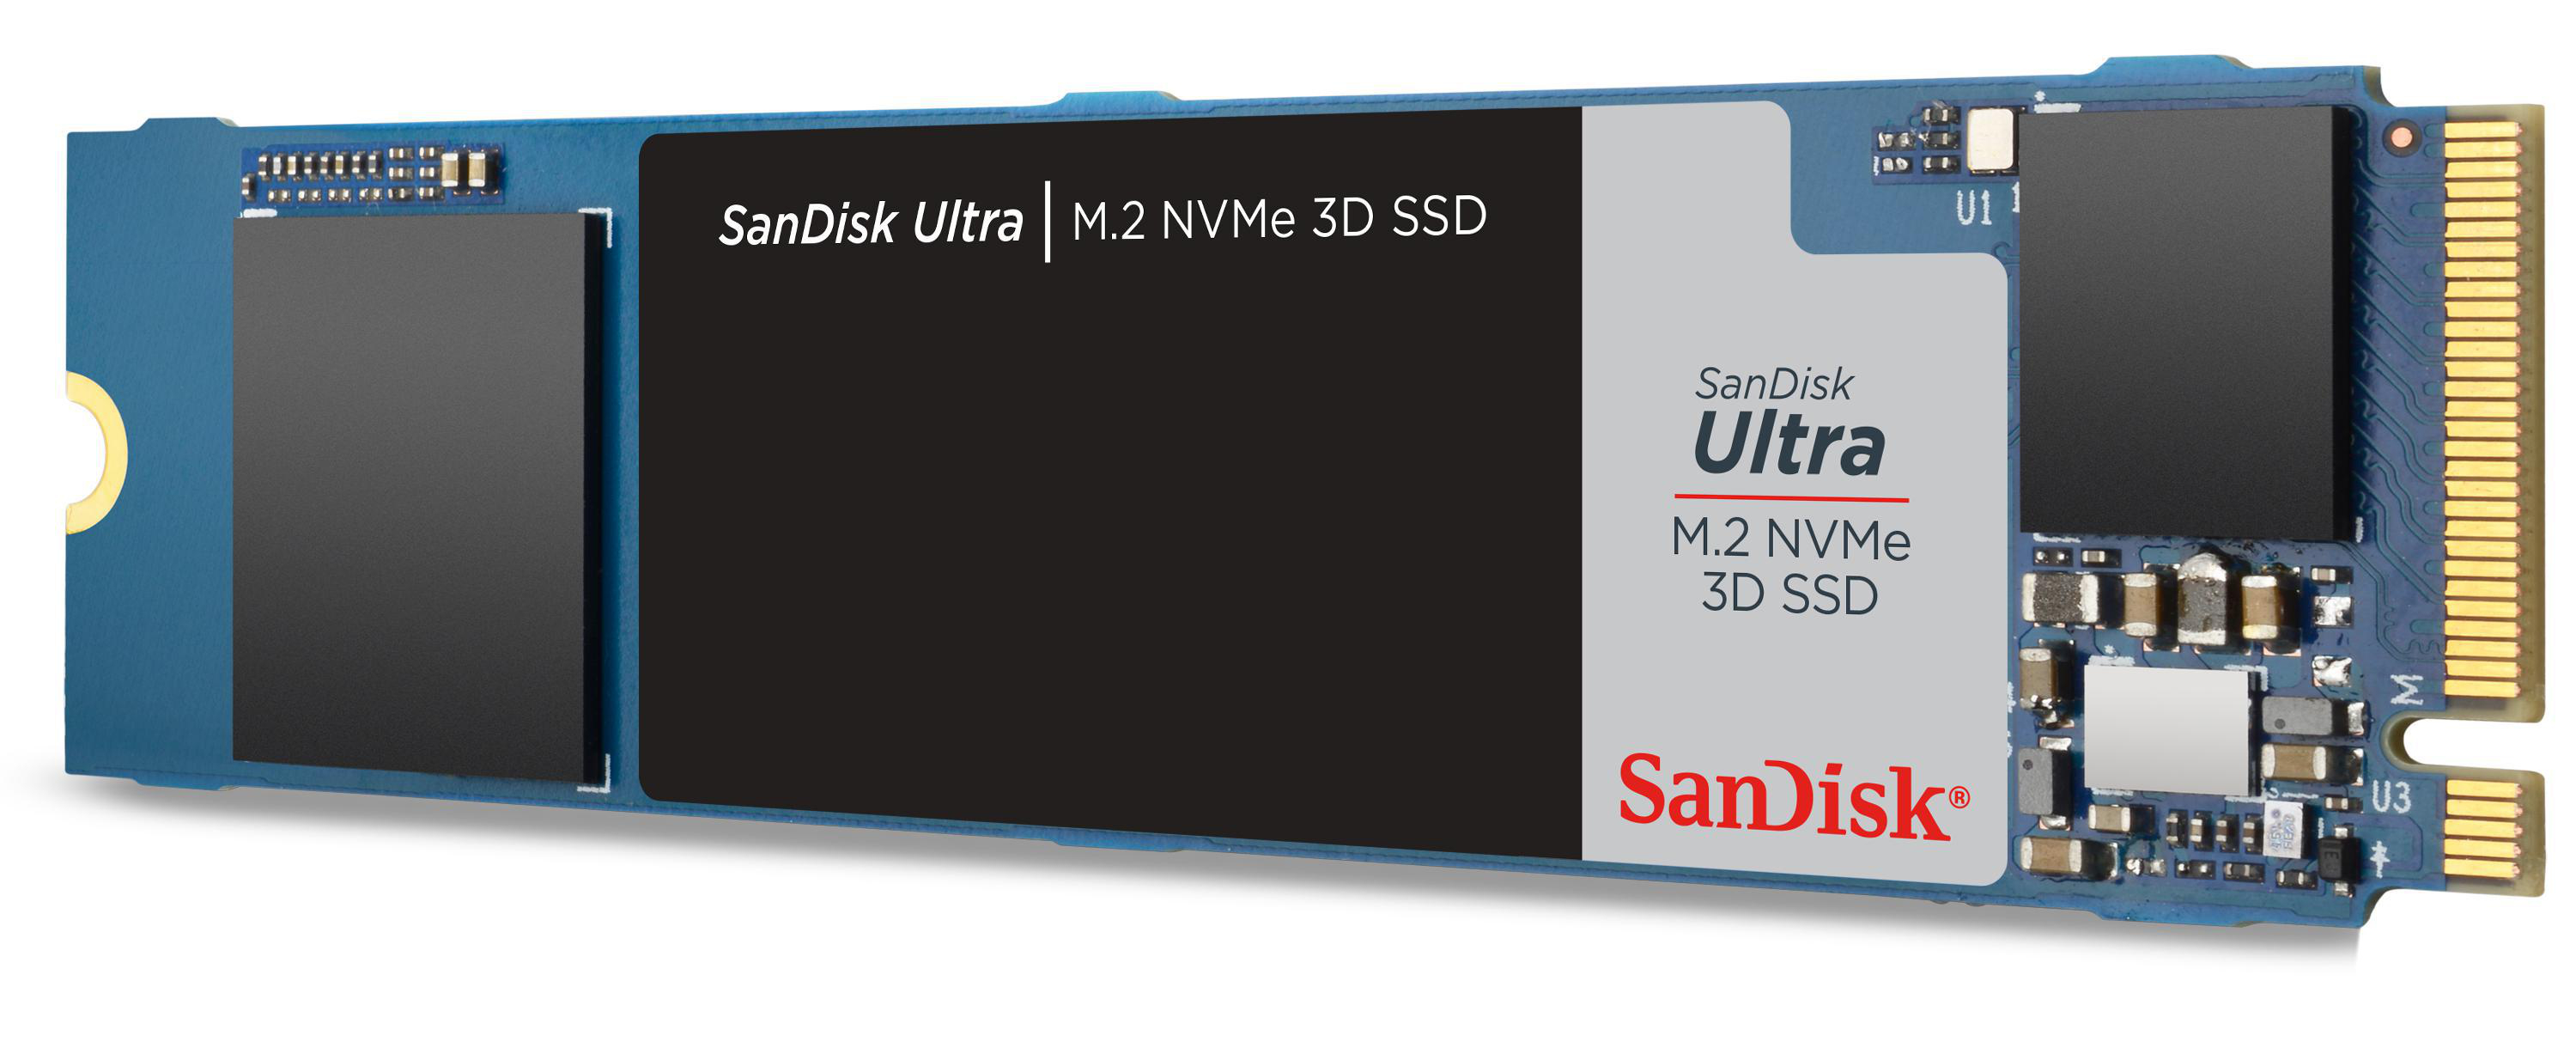 SANDISK Ultra 3D Speicher, 1 TB NVMe, intern Interner M.2 Speicher via